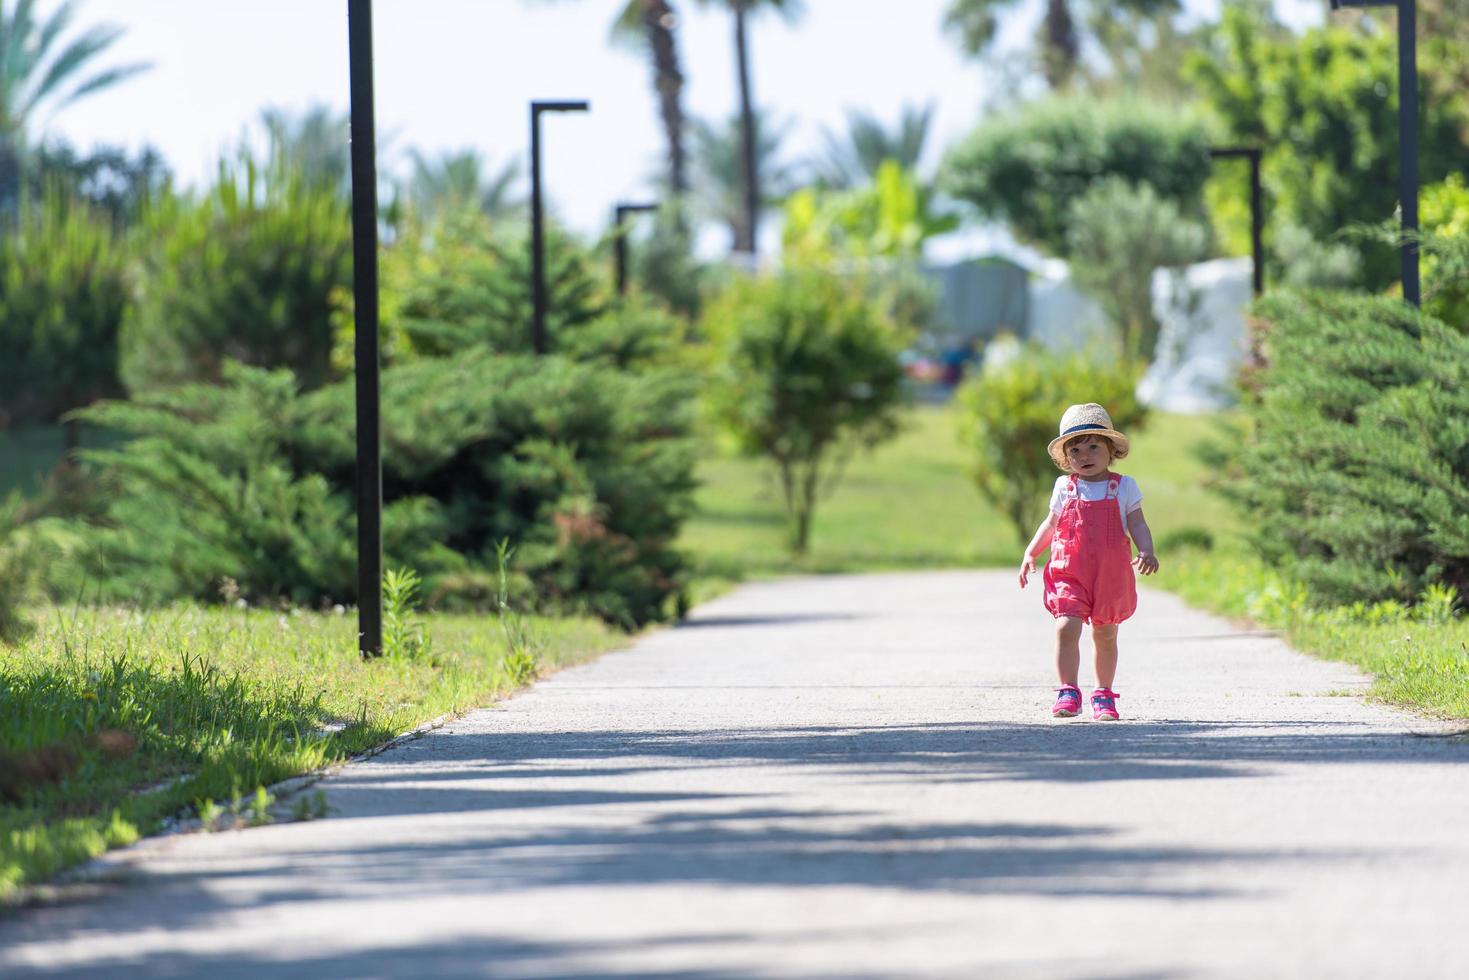 petite fille qui court dans le parc d'été photo